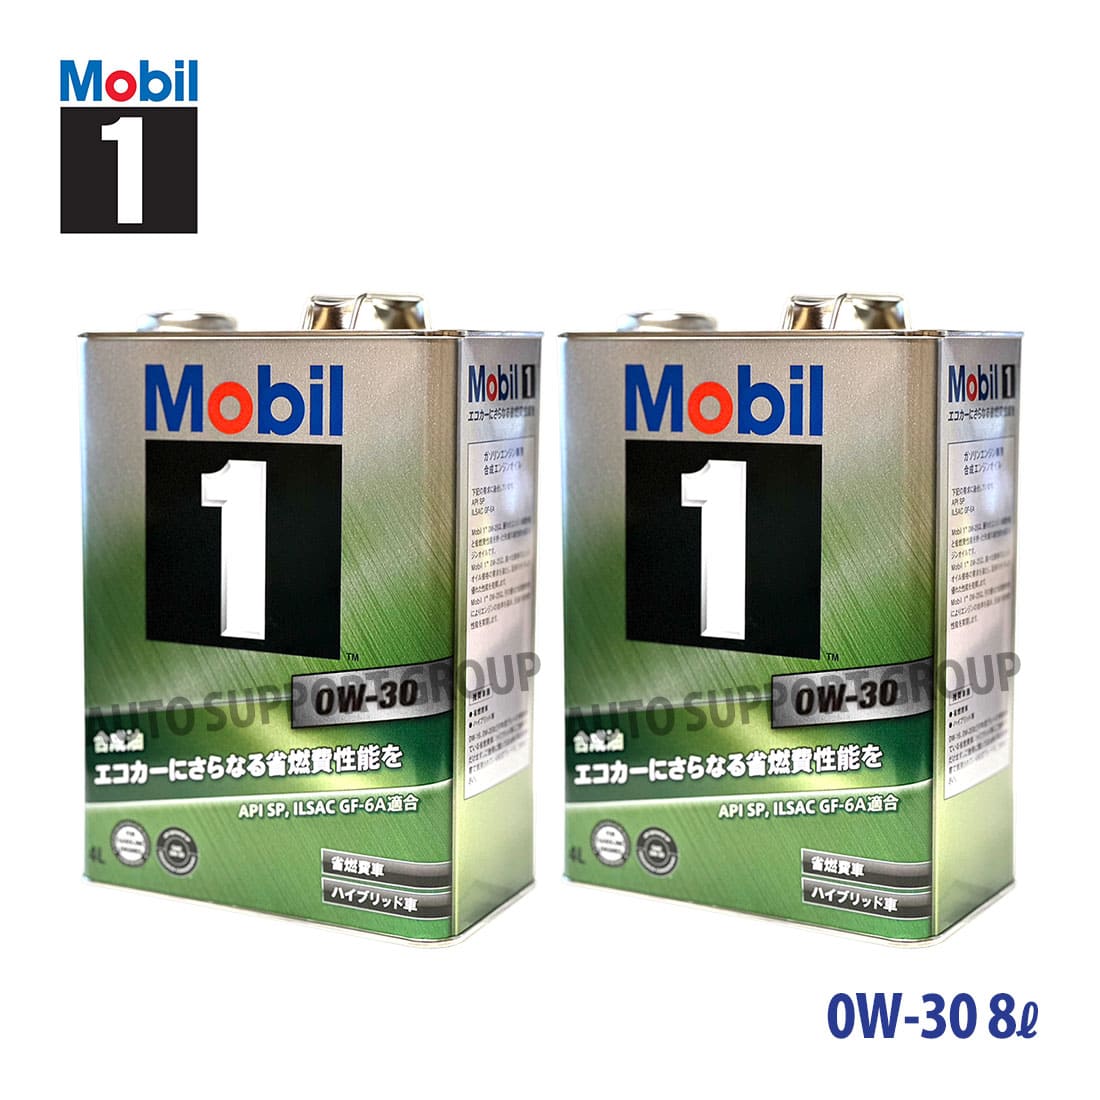 Mobil 1(モービル1) 5W30 [ 3リットル X 6缶 ] S...+sobrape.com.br